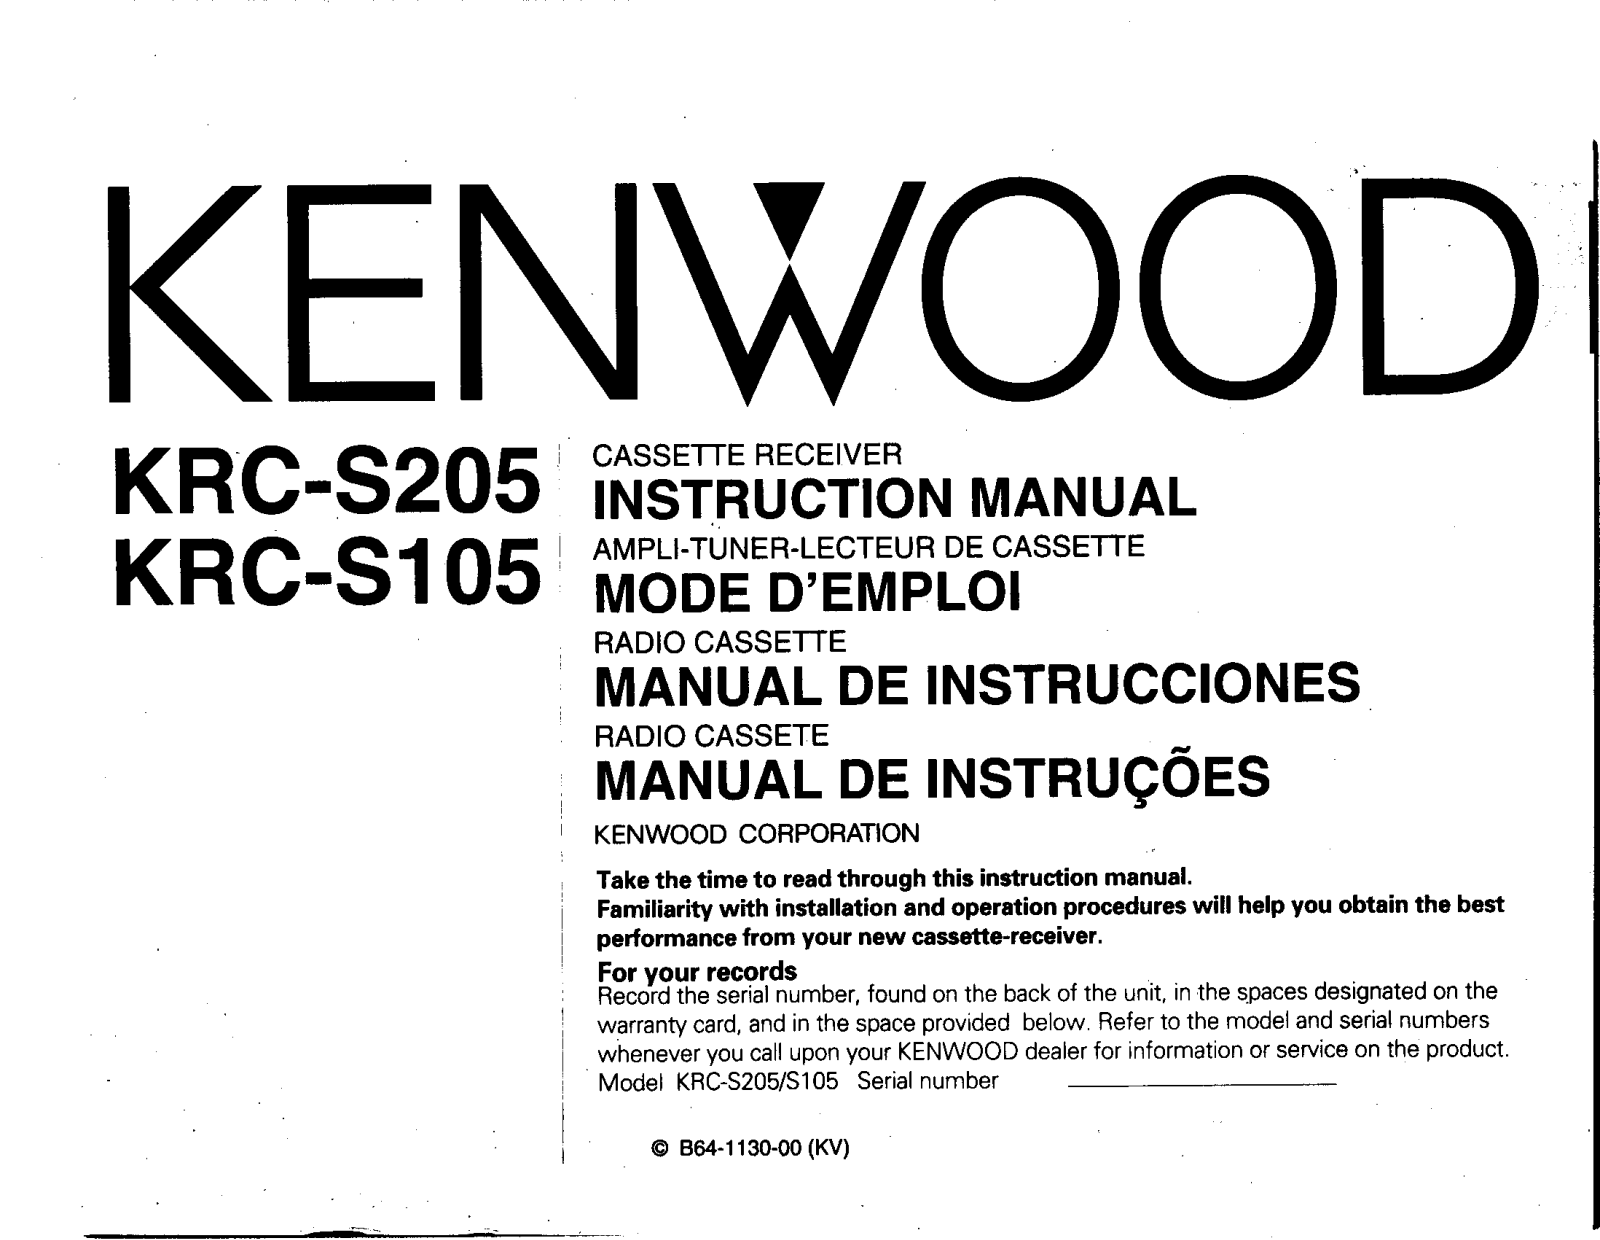 Kenwood KRC-S205, KRC-S105 Owner's Manual